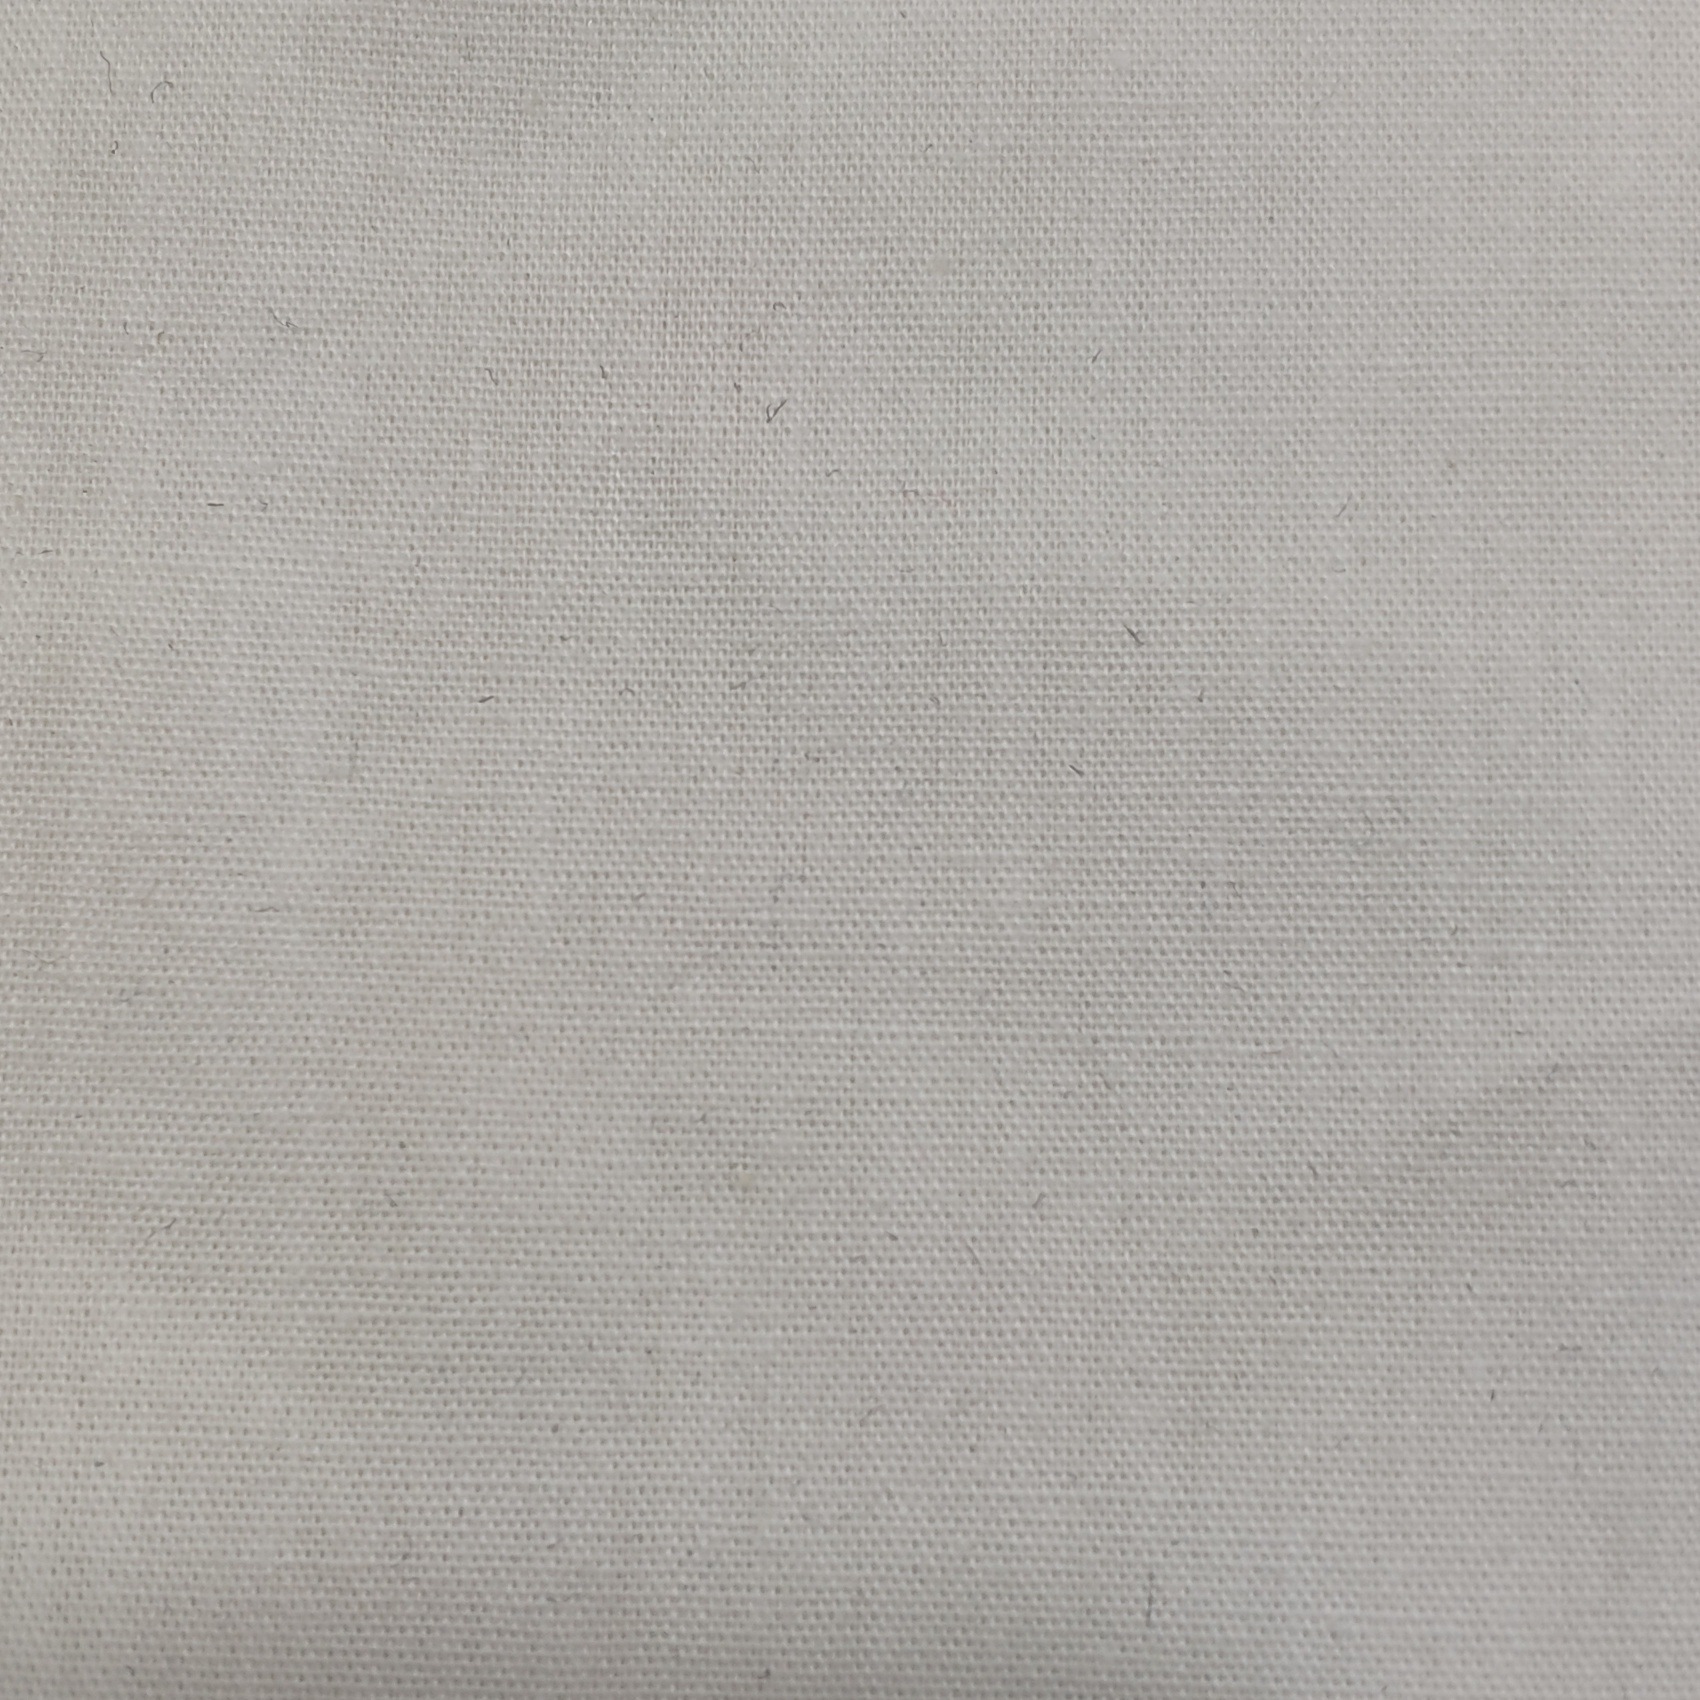 棉布面料 夏季平纹双面薄料棉布全棉府绸漂白半漂黑色4oz HL6164K示例图5